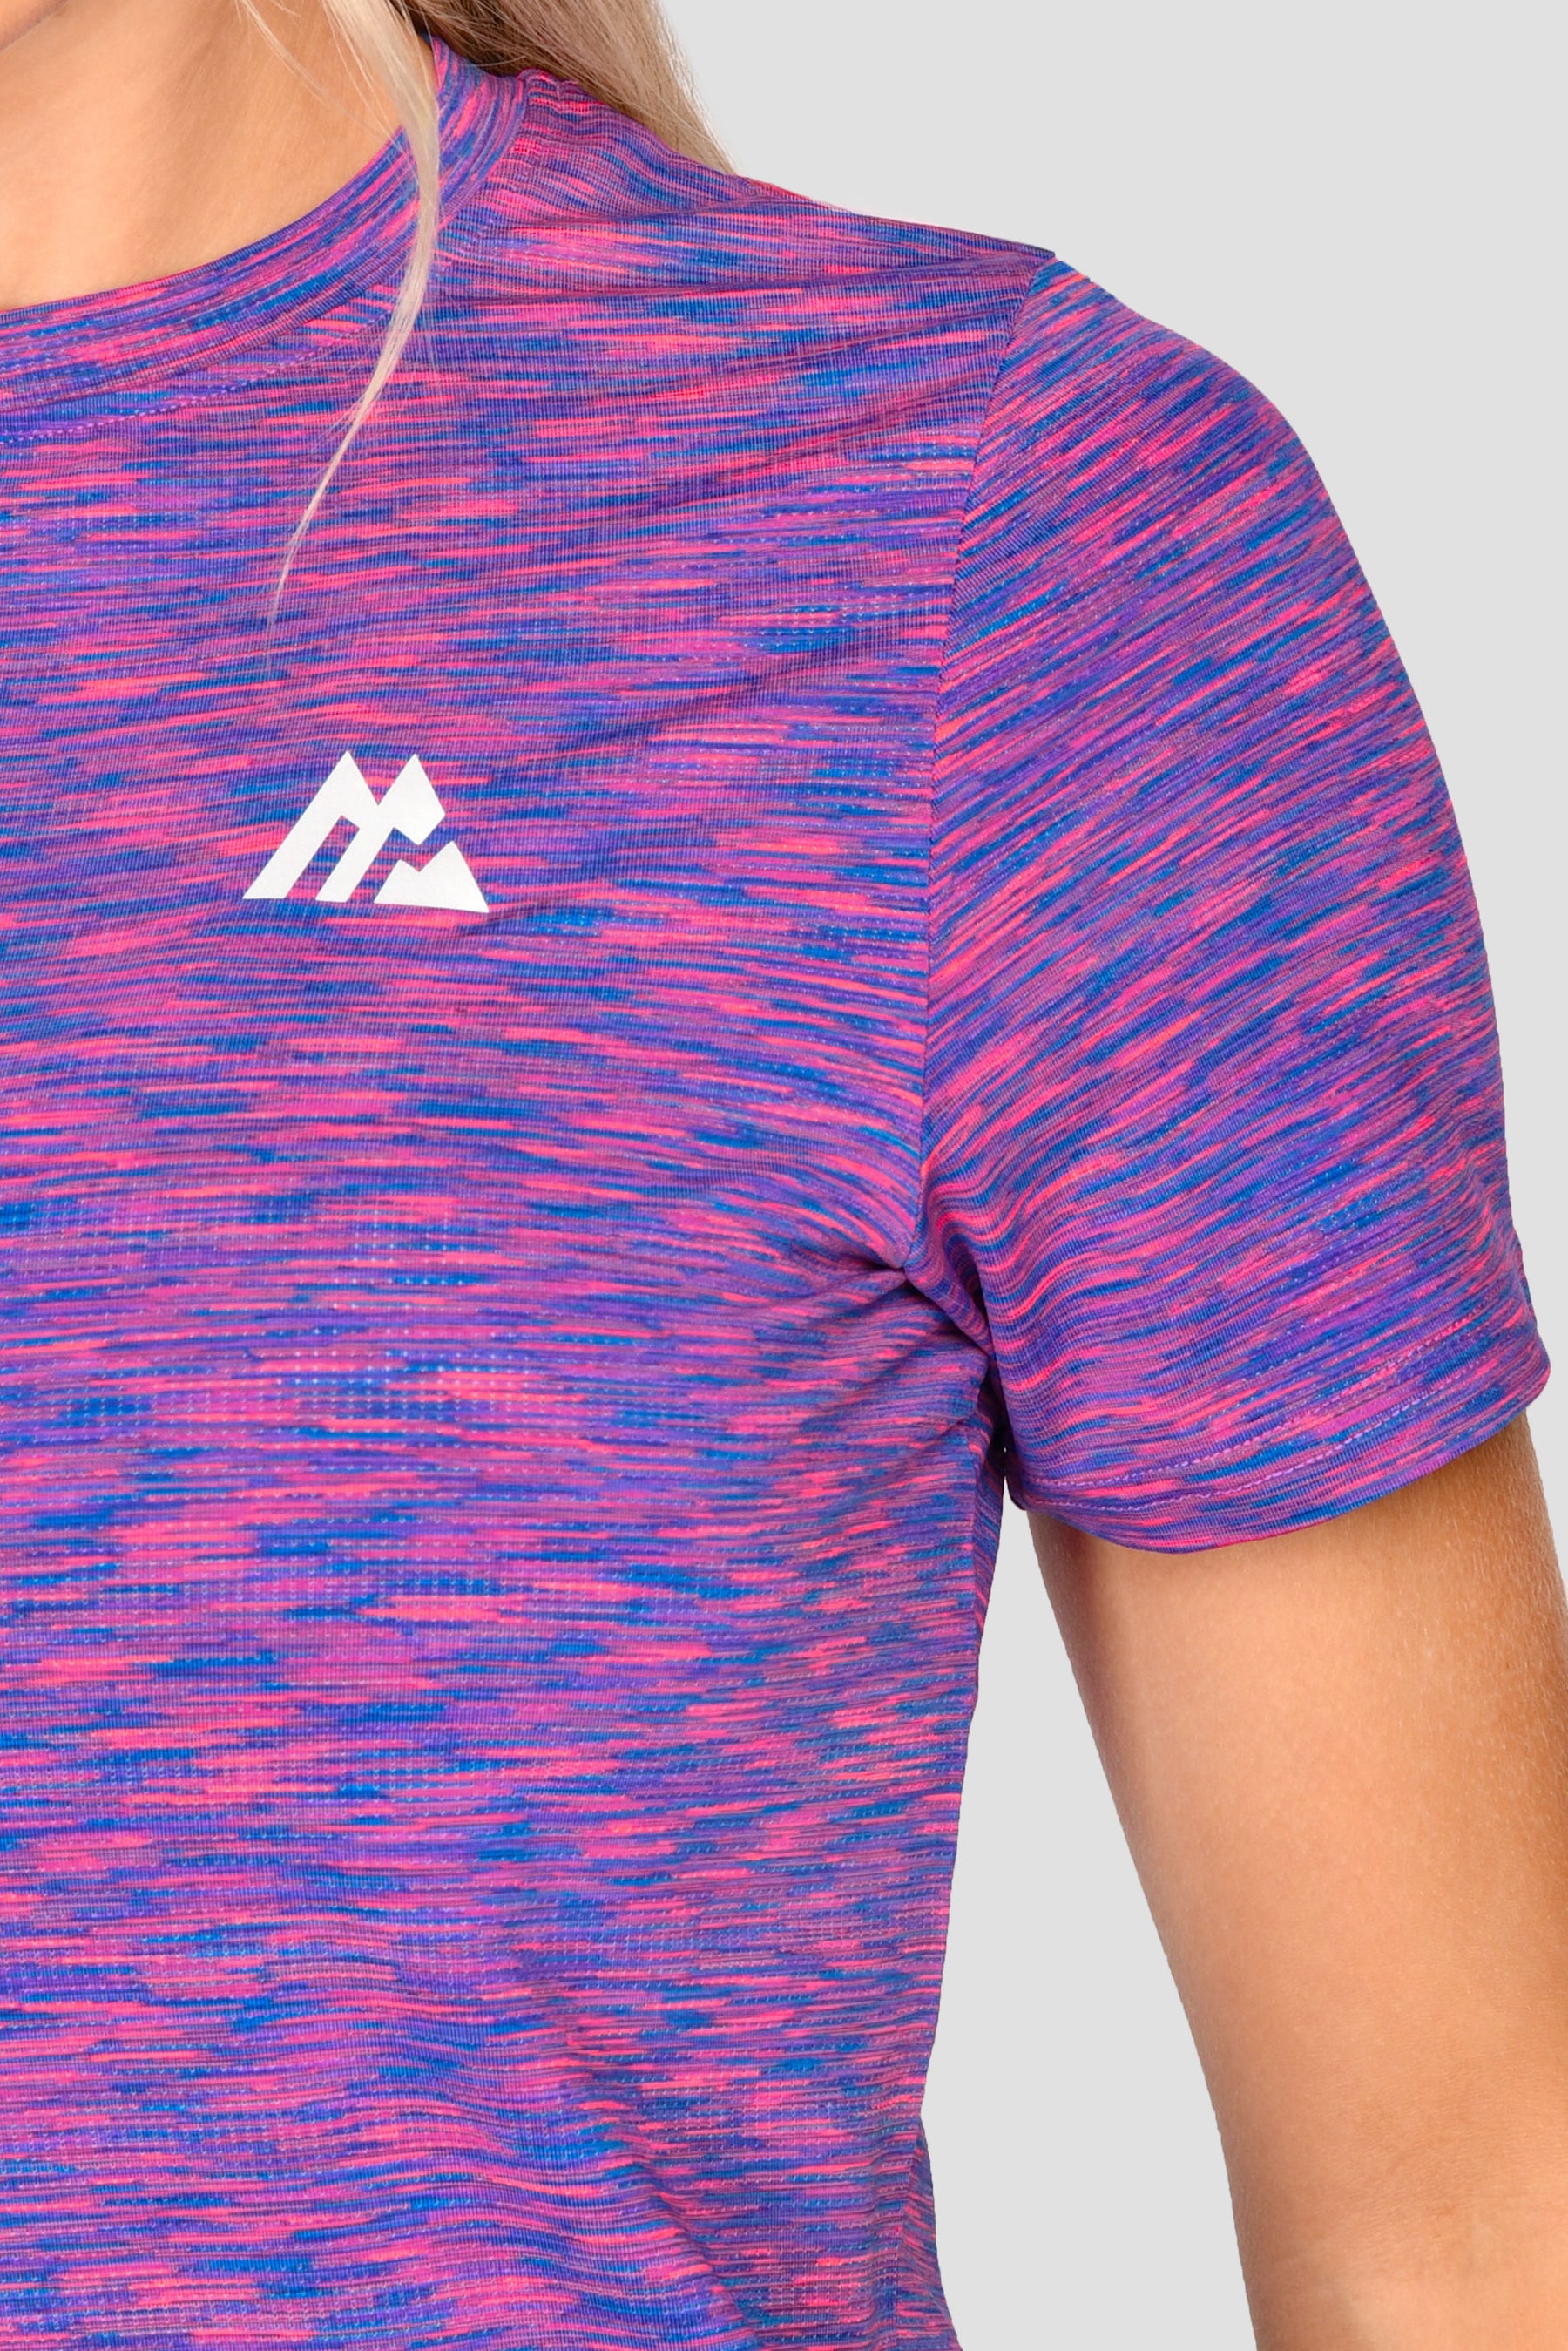 Women's Trail 2.0 T-Shirt - Neon Purple/Neon Blue Multi